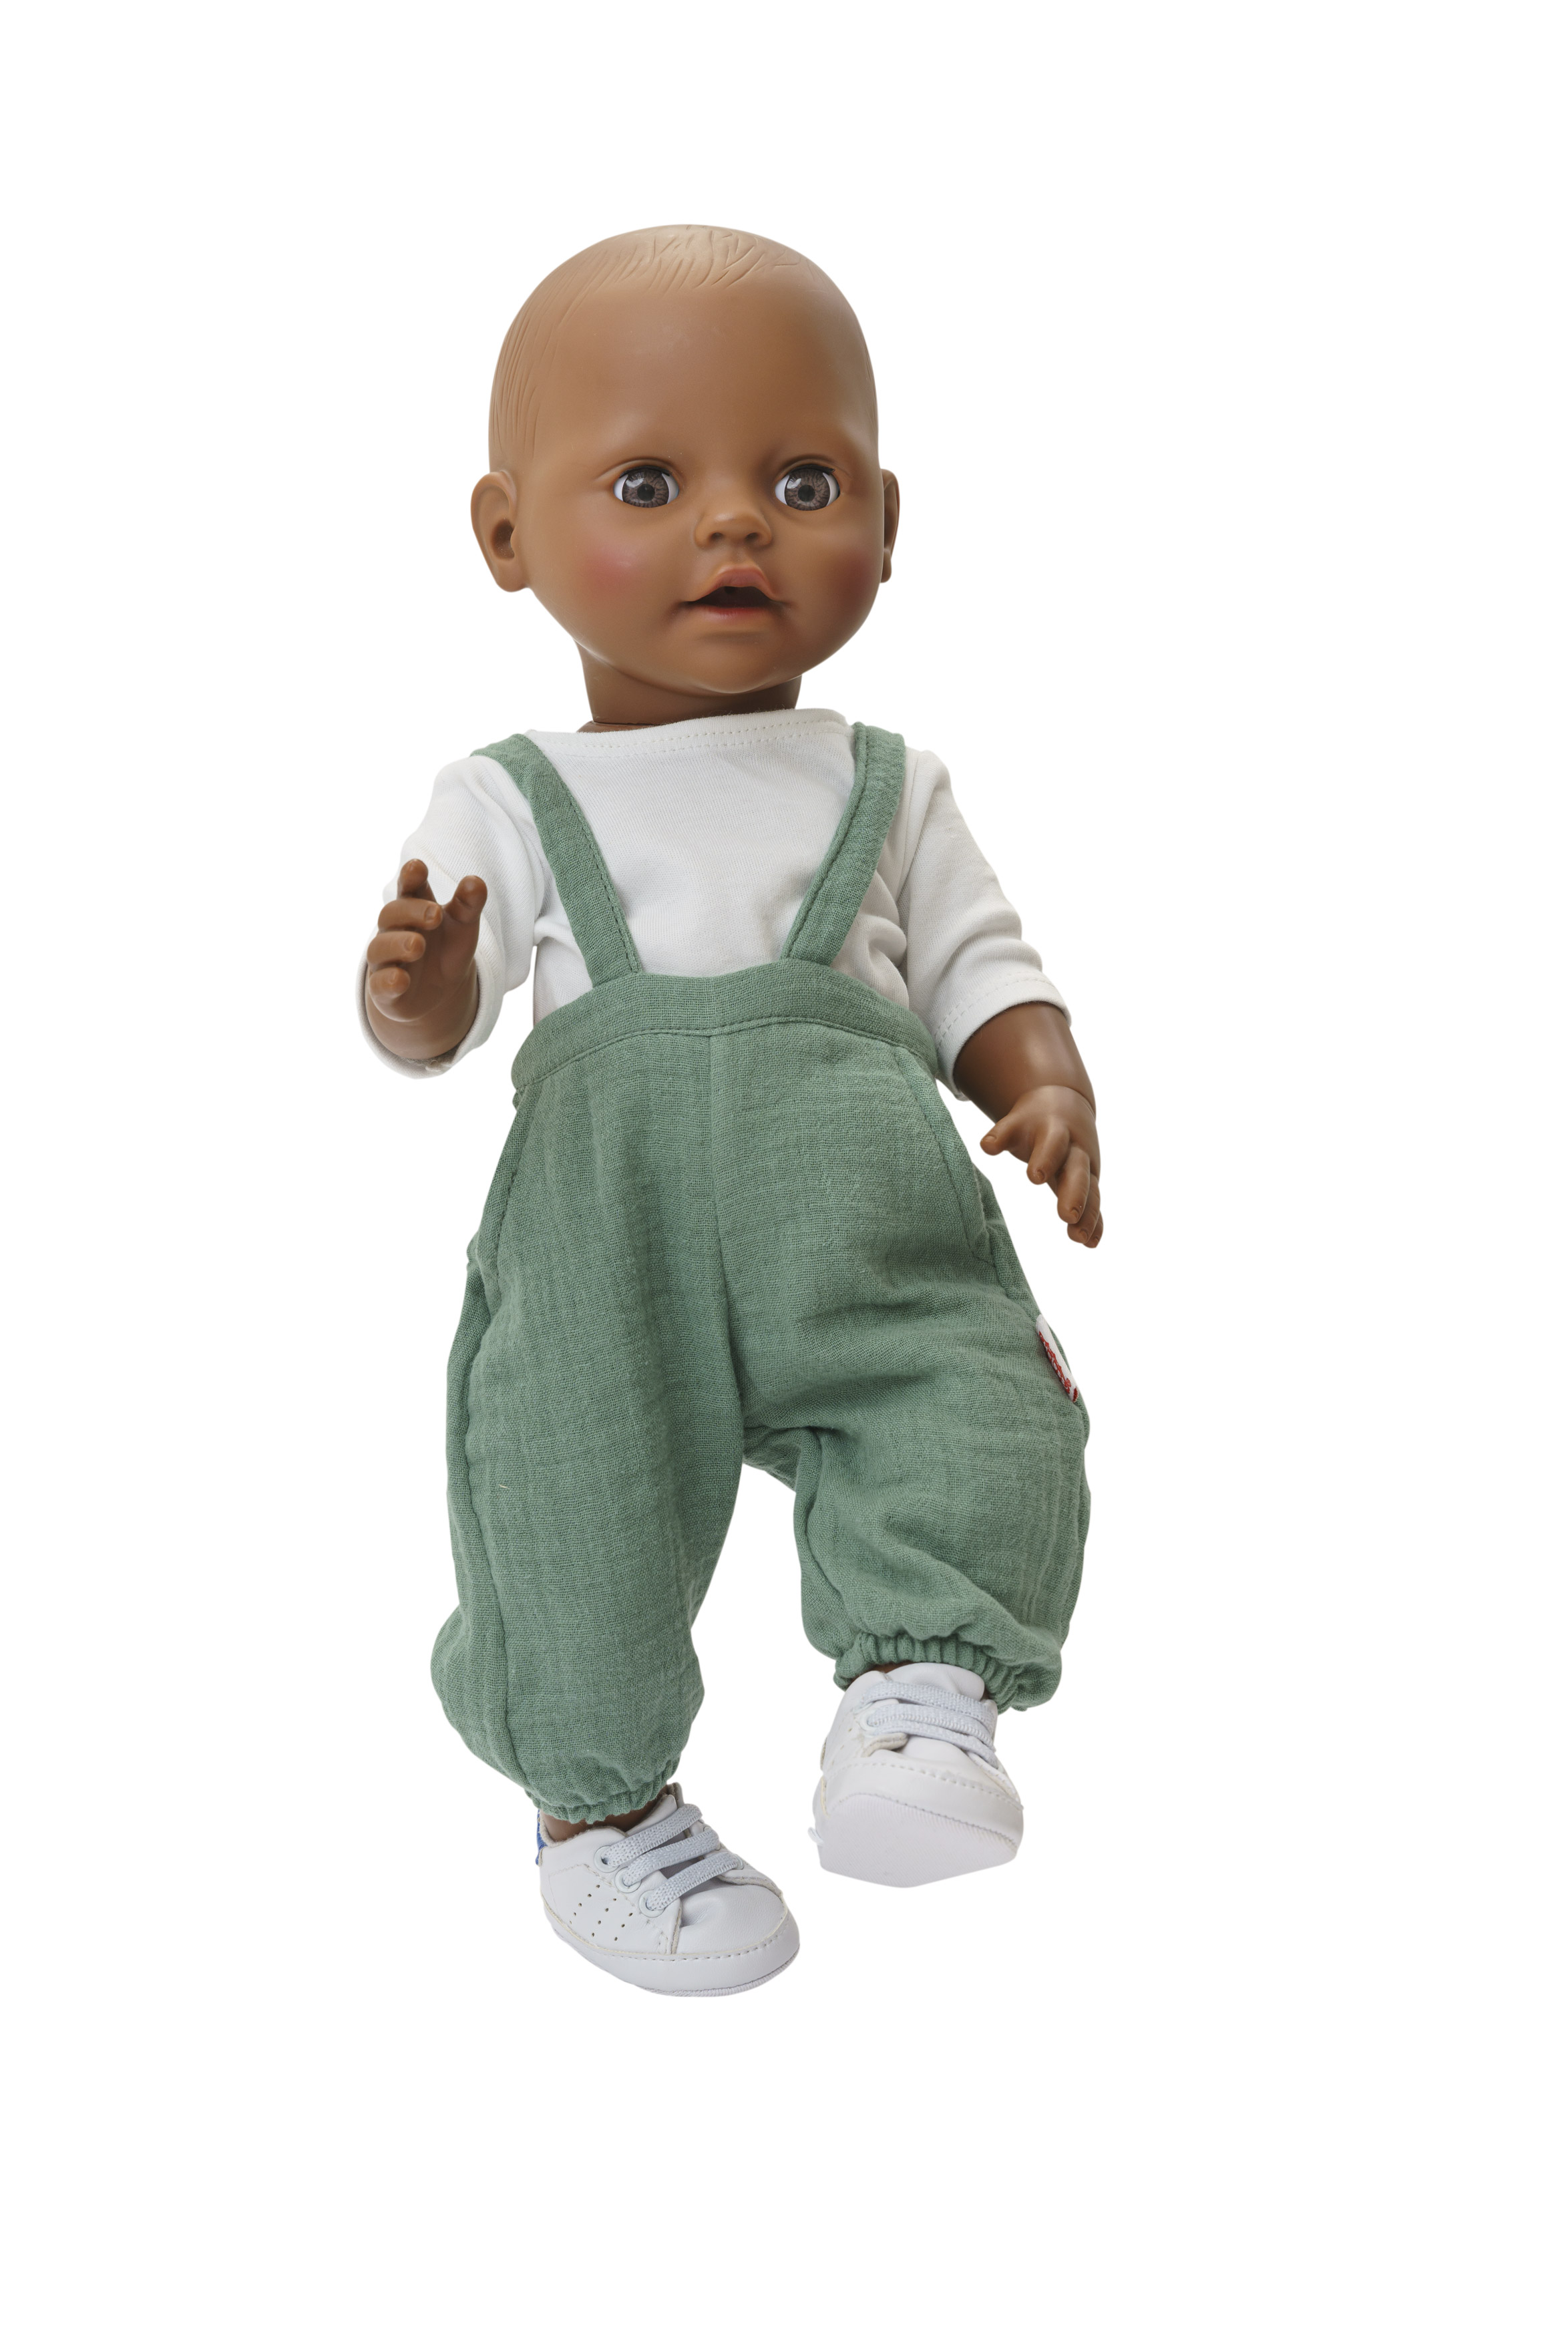 Puppen-Latzhose aus 100 % Bio-Baumwolle, salbeigrün, mit weißem T-Shirt, 2-teilig, Gr. 35-45 cm